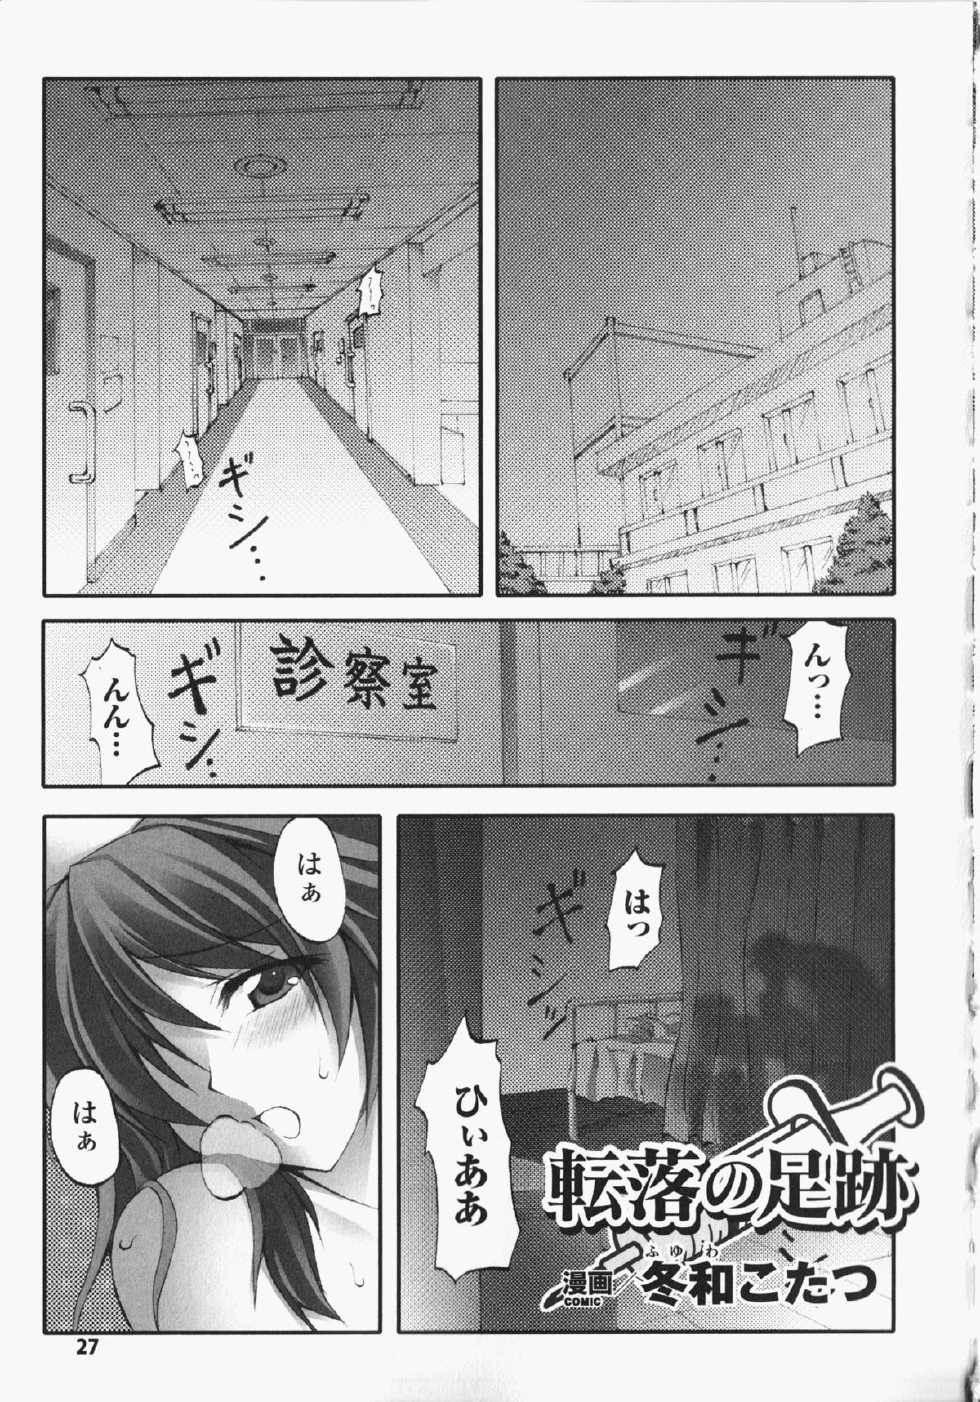 [Anthology] Anata no Shiranai Kangofu Anthology Comics - Page 28